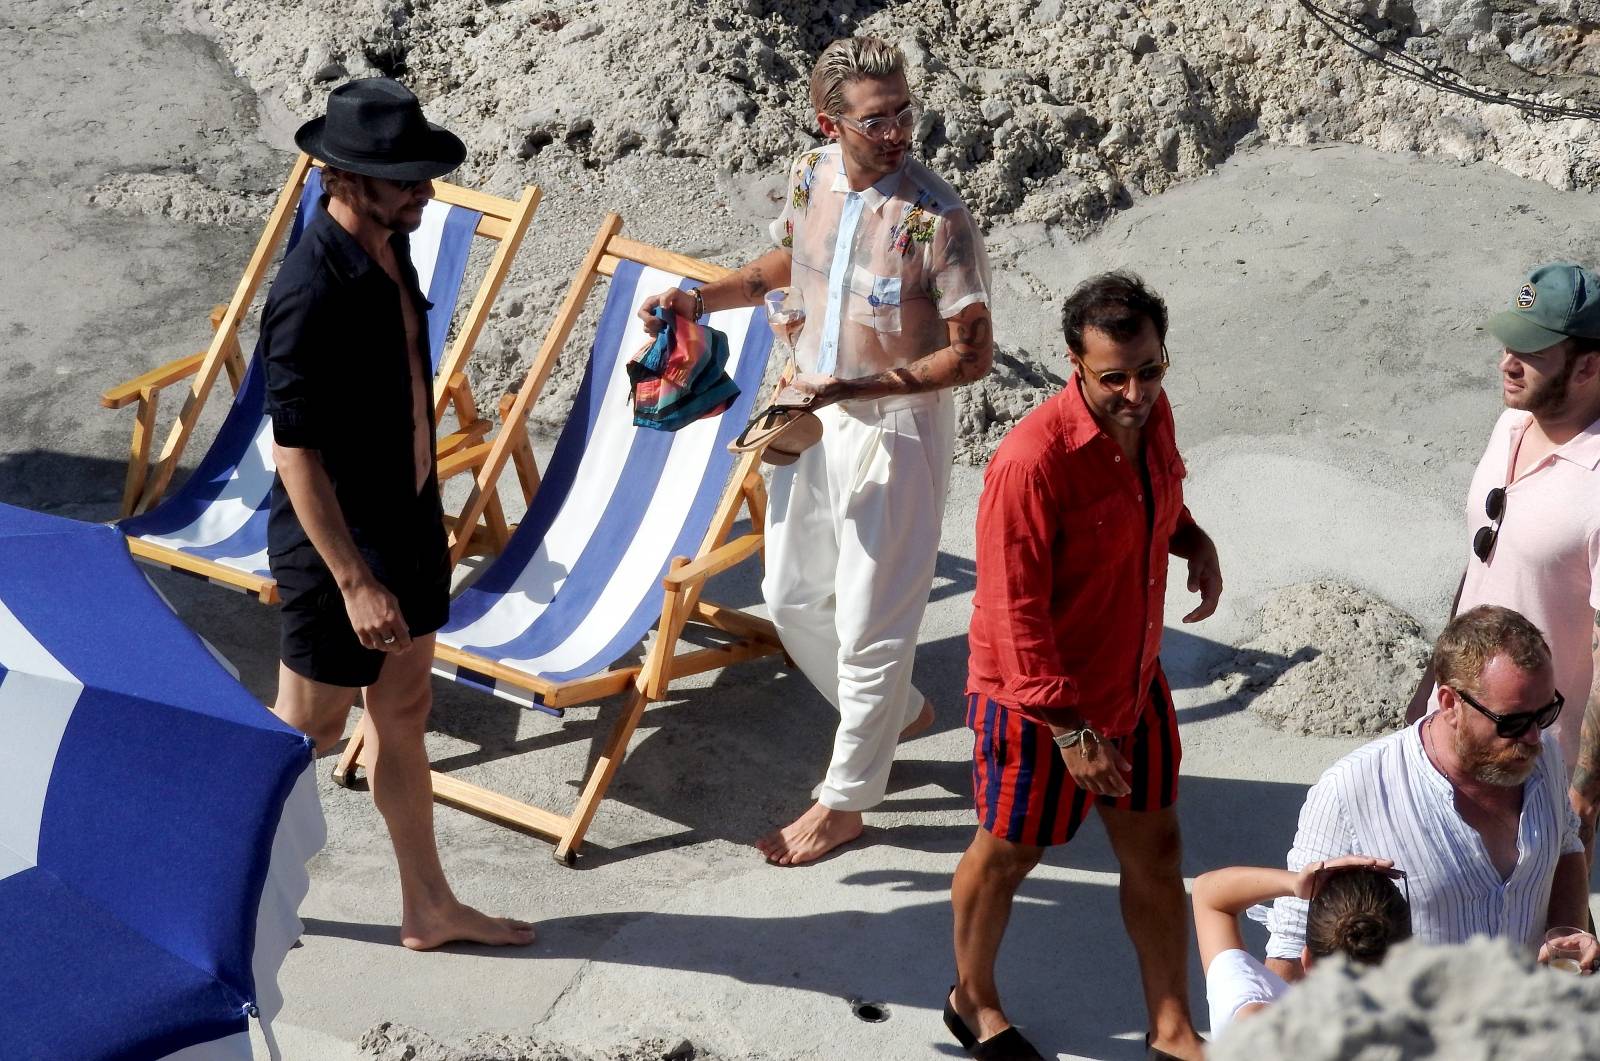 Capri: Heidi Klum i Tom Kaulitz organizirali zabavu za prijatelje u Fontaneli